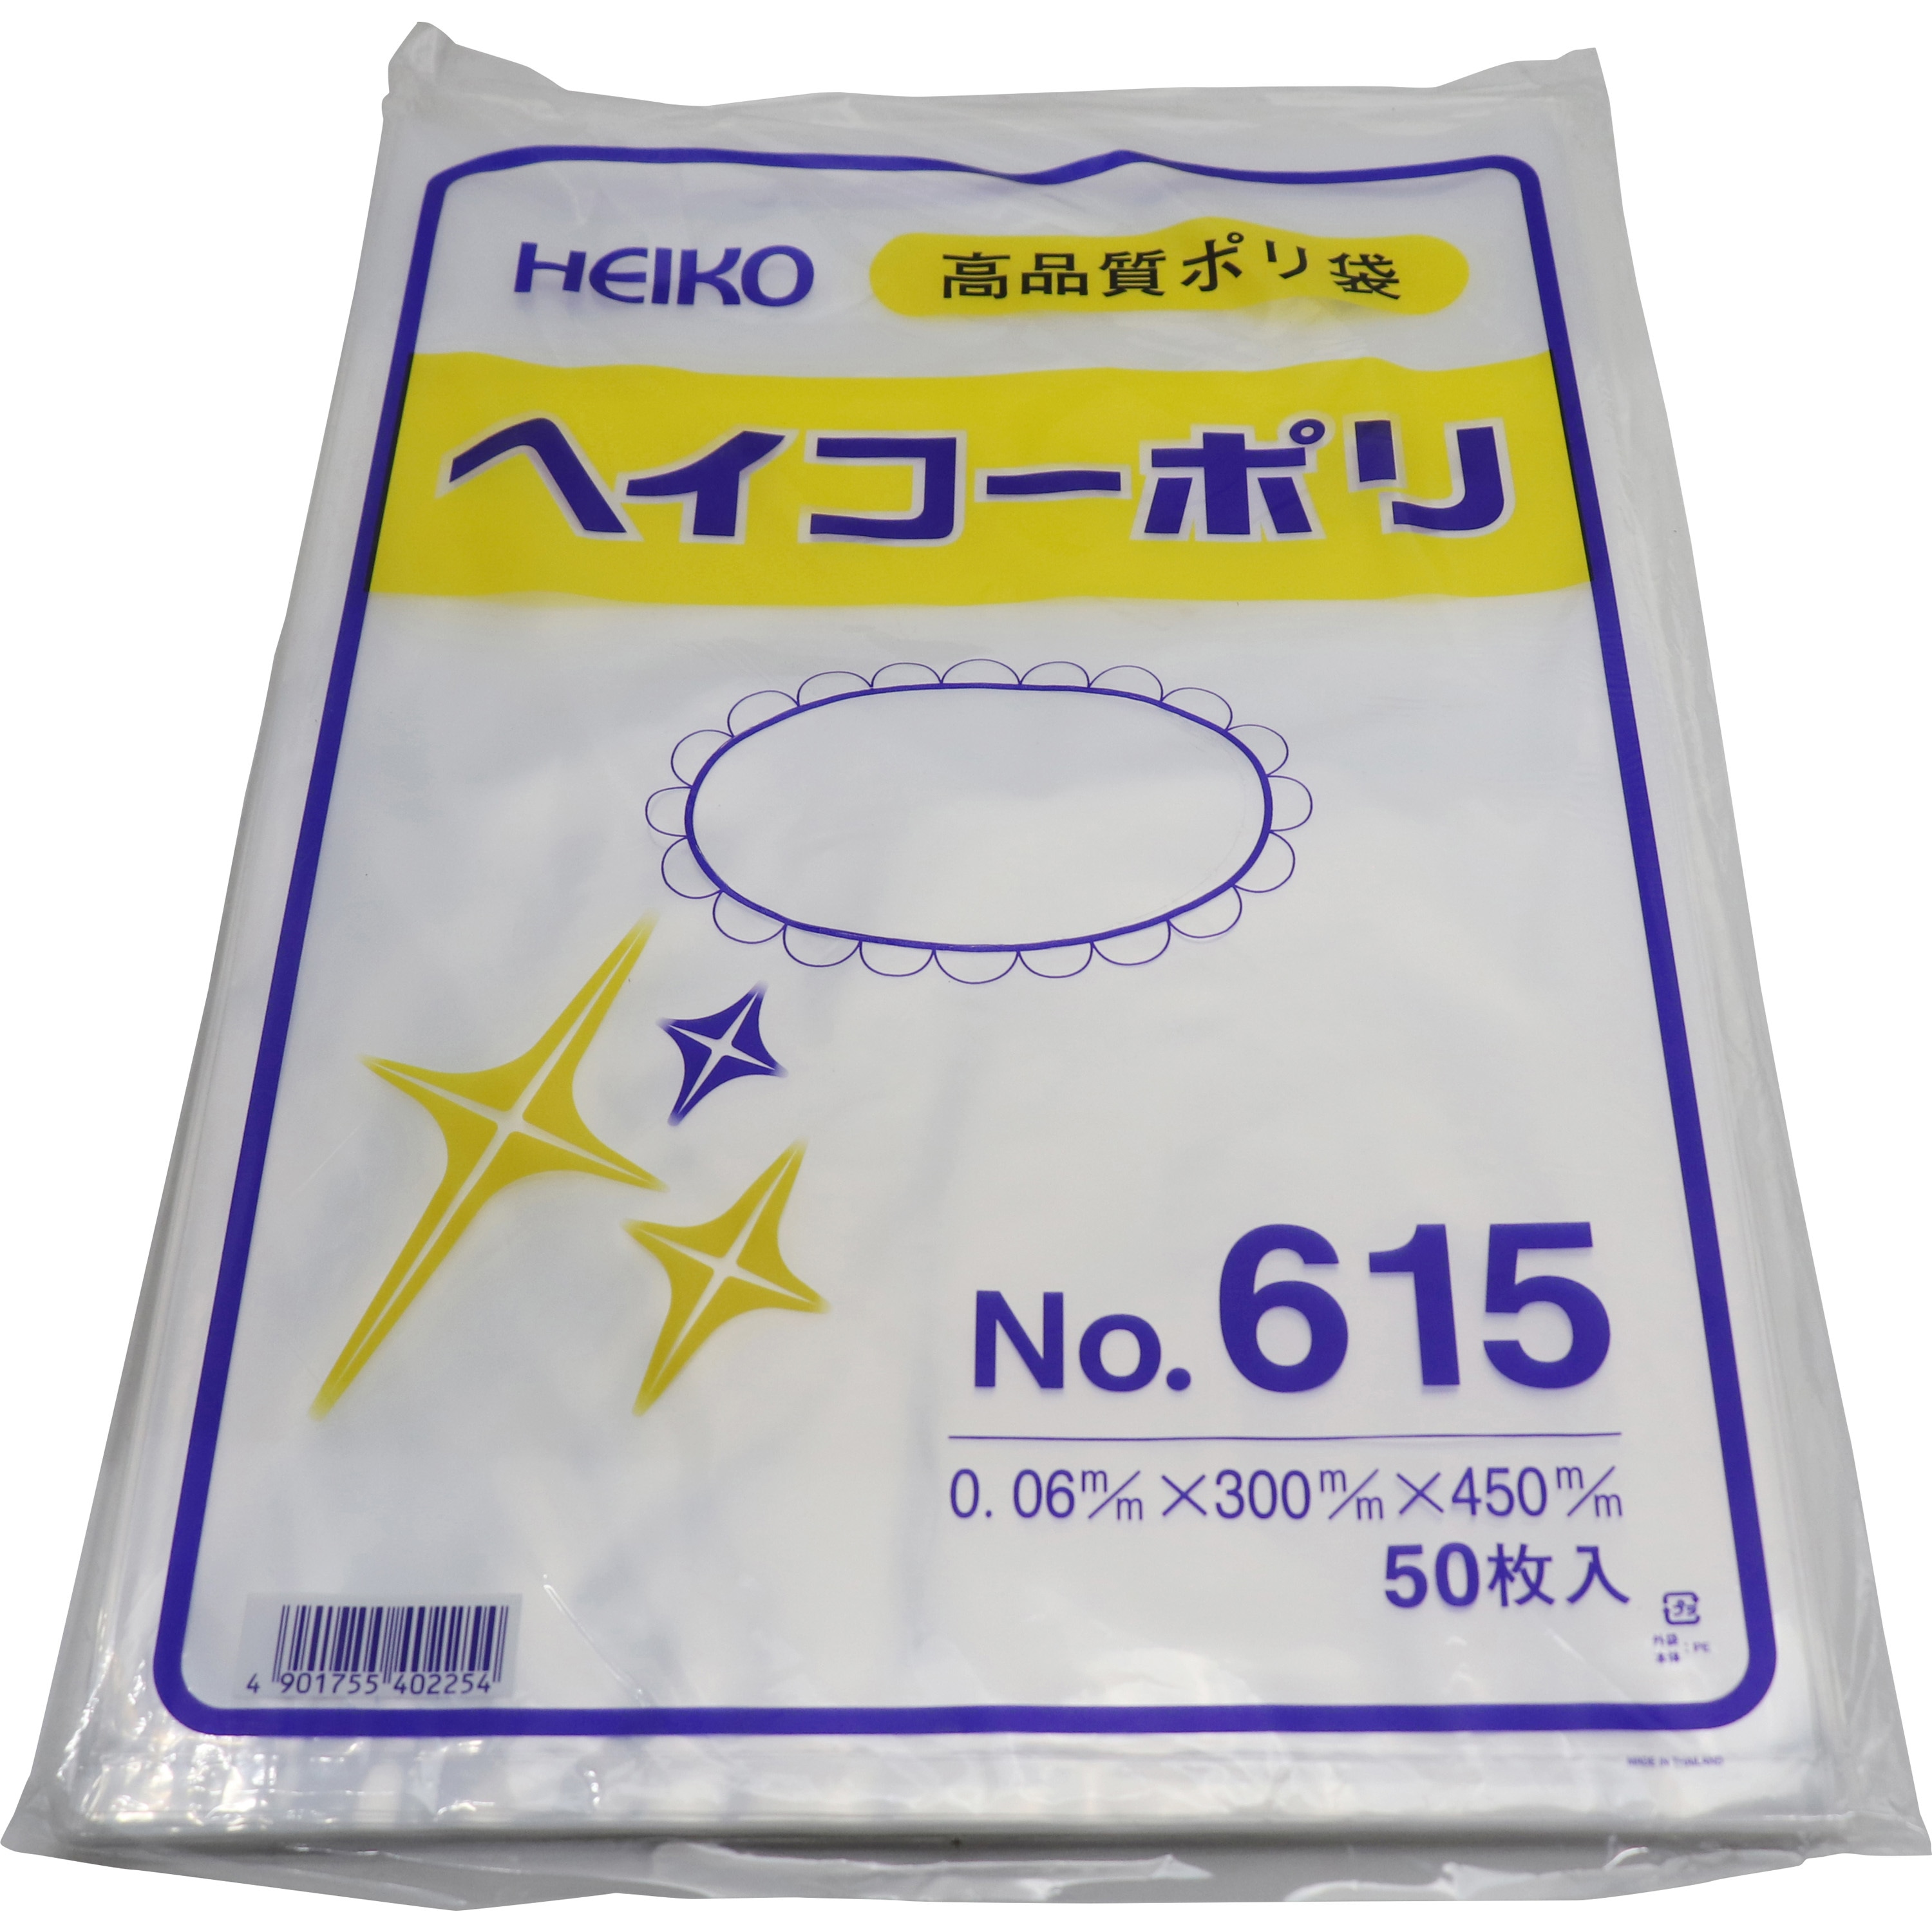 ポリエチレン袋0.06mm 透明色 適合規格食品衛生法適合 サイズ(号)15 1袋(50枚)